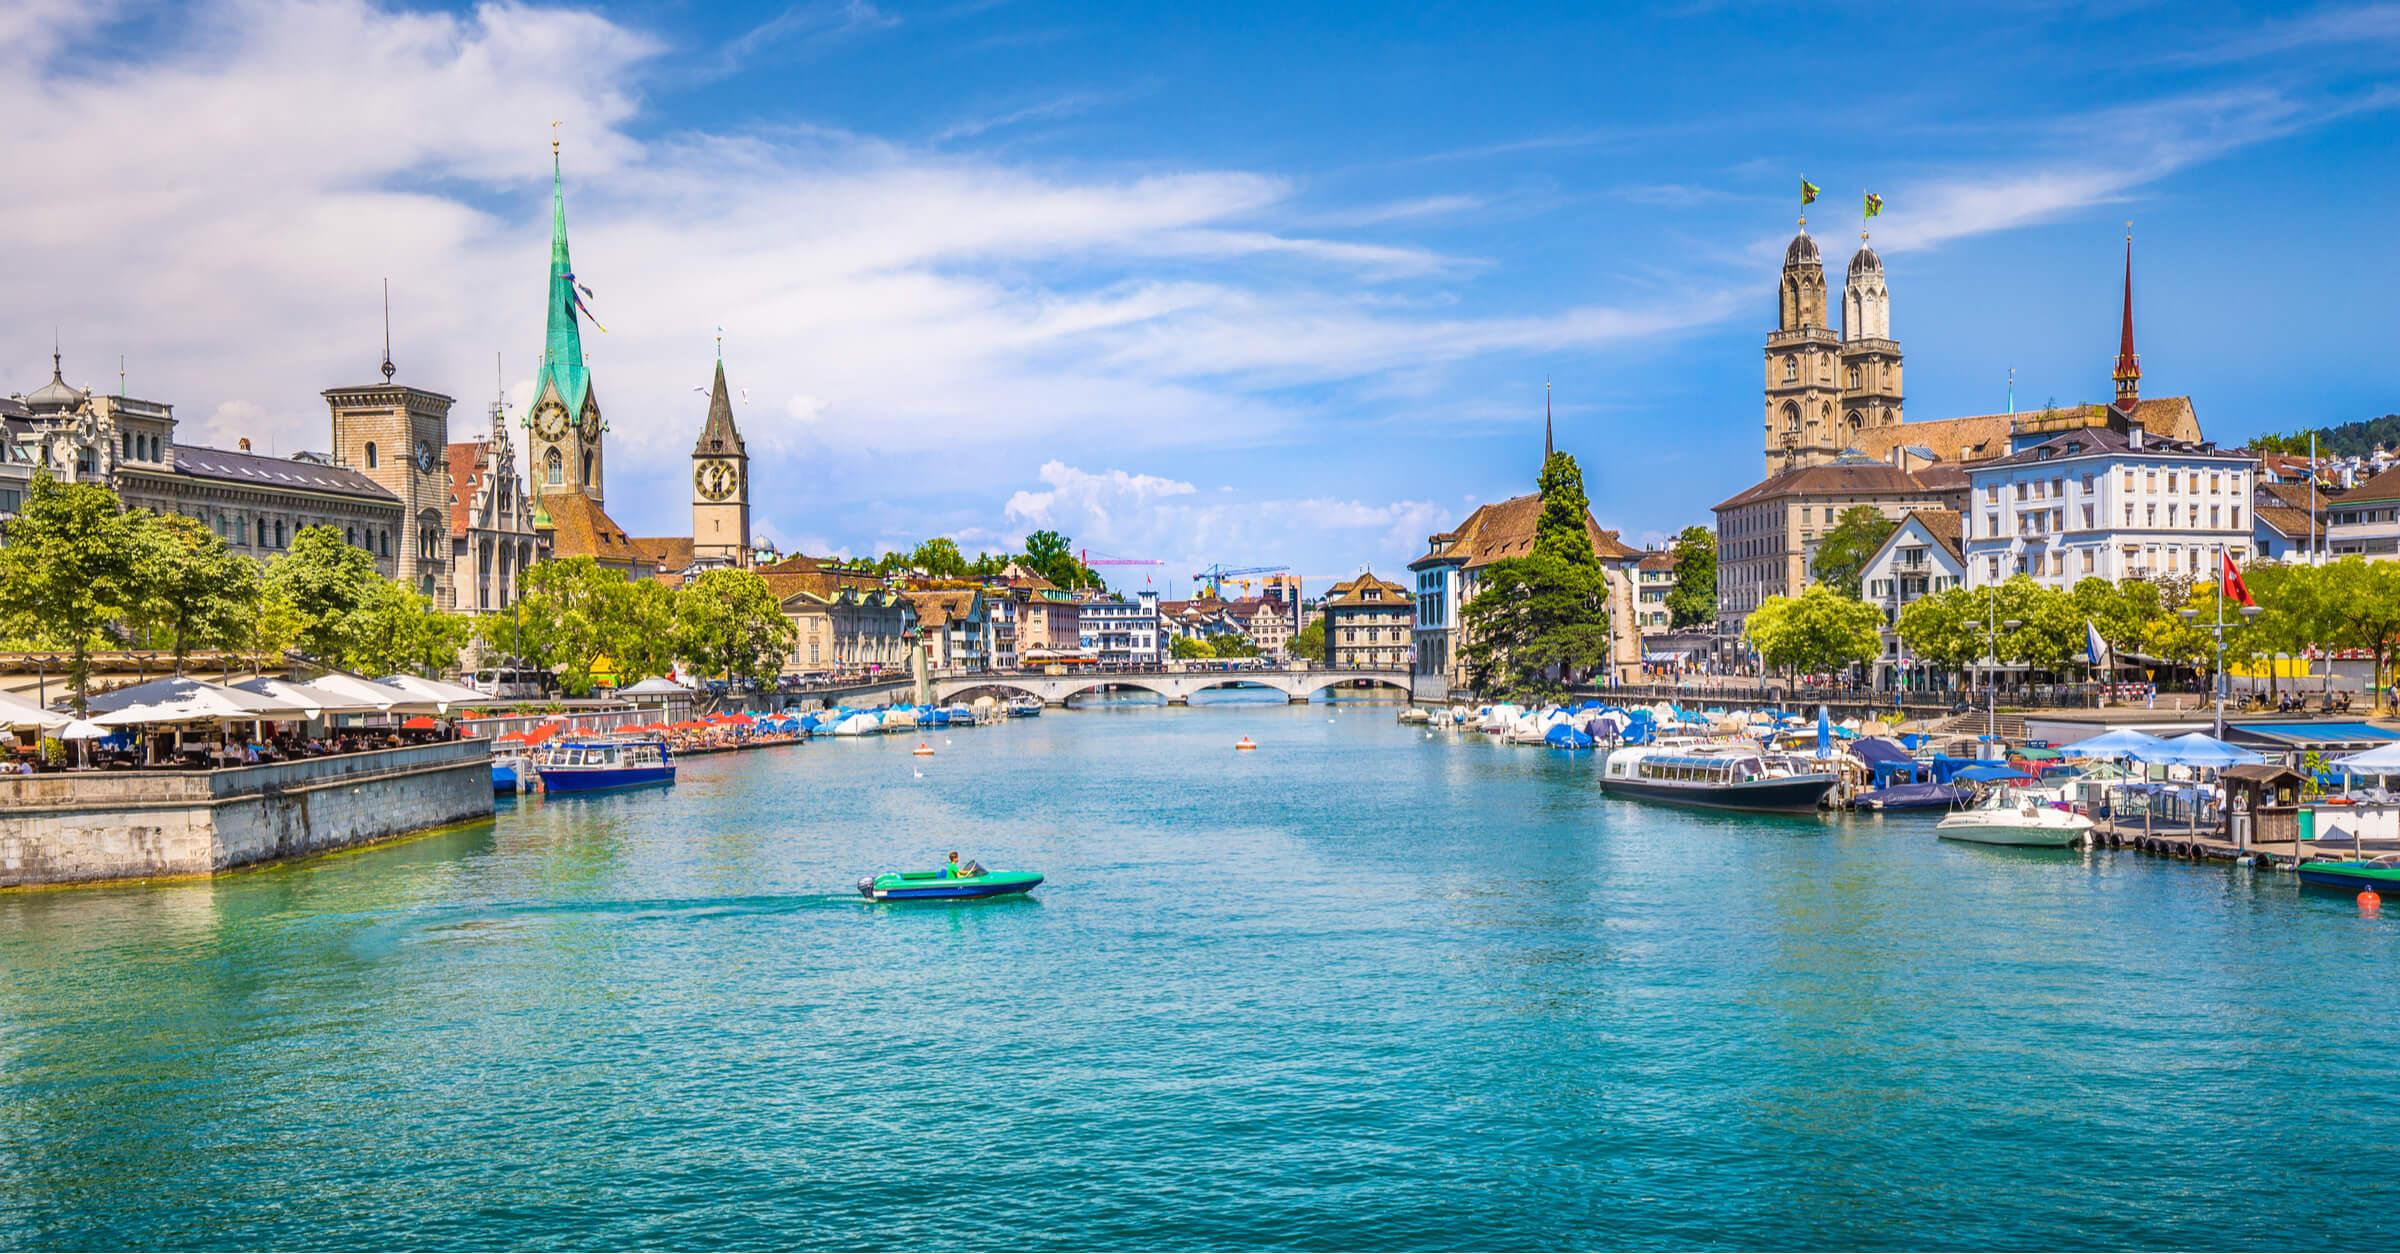 Zurigo: una delle città migliori in cui vivere e lavorare